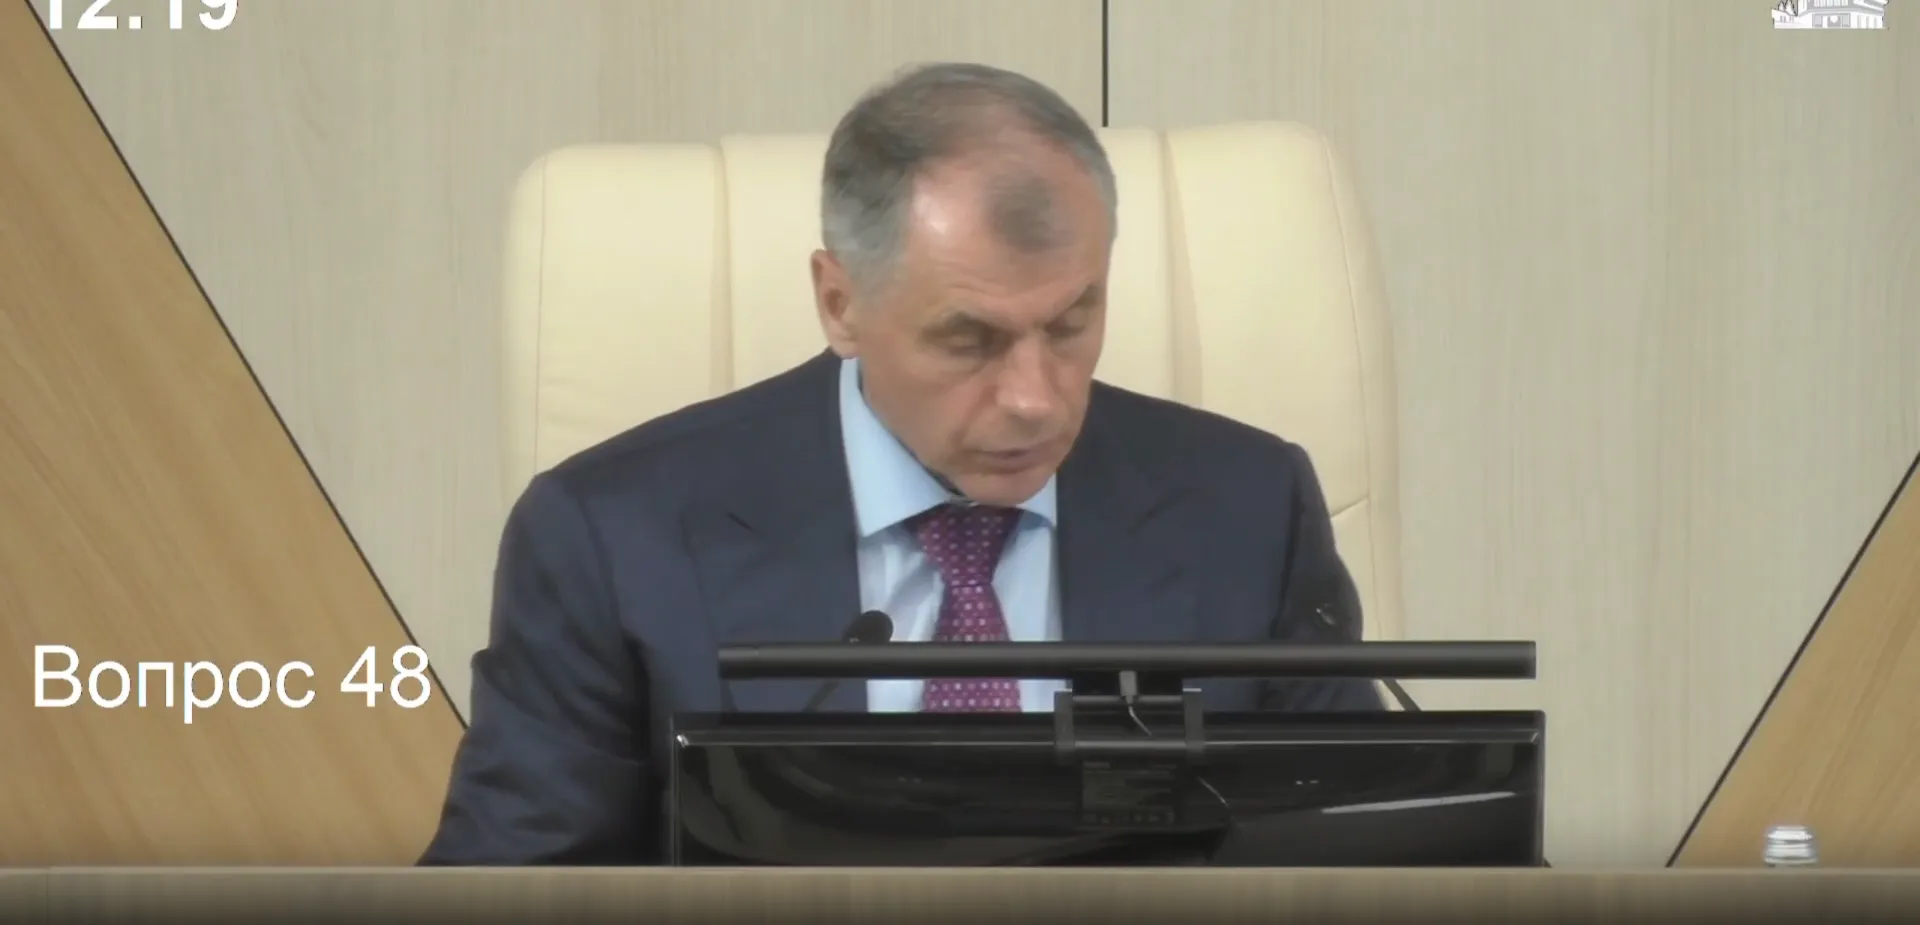 Откровенный разговор крымских депутатов попал в Сеть из-за забытого микрофона: 